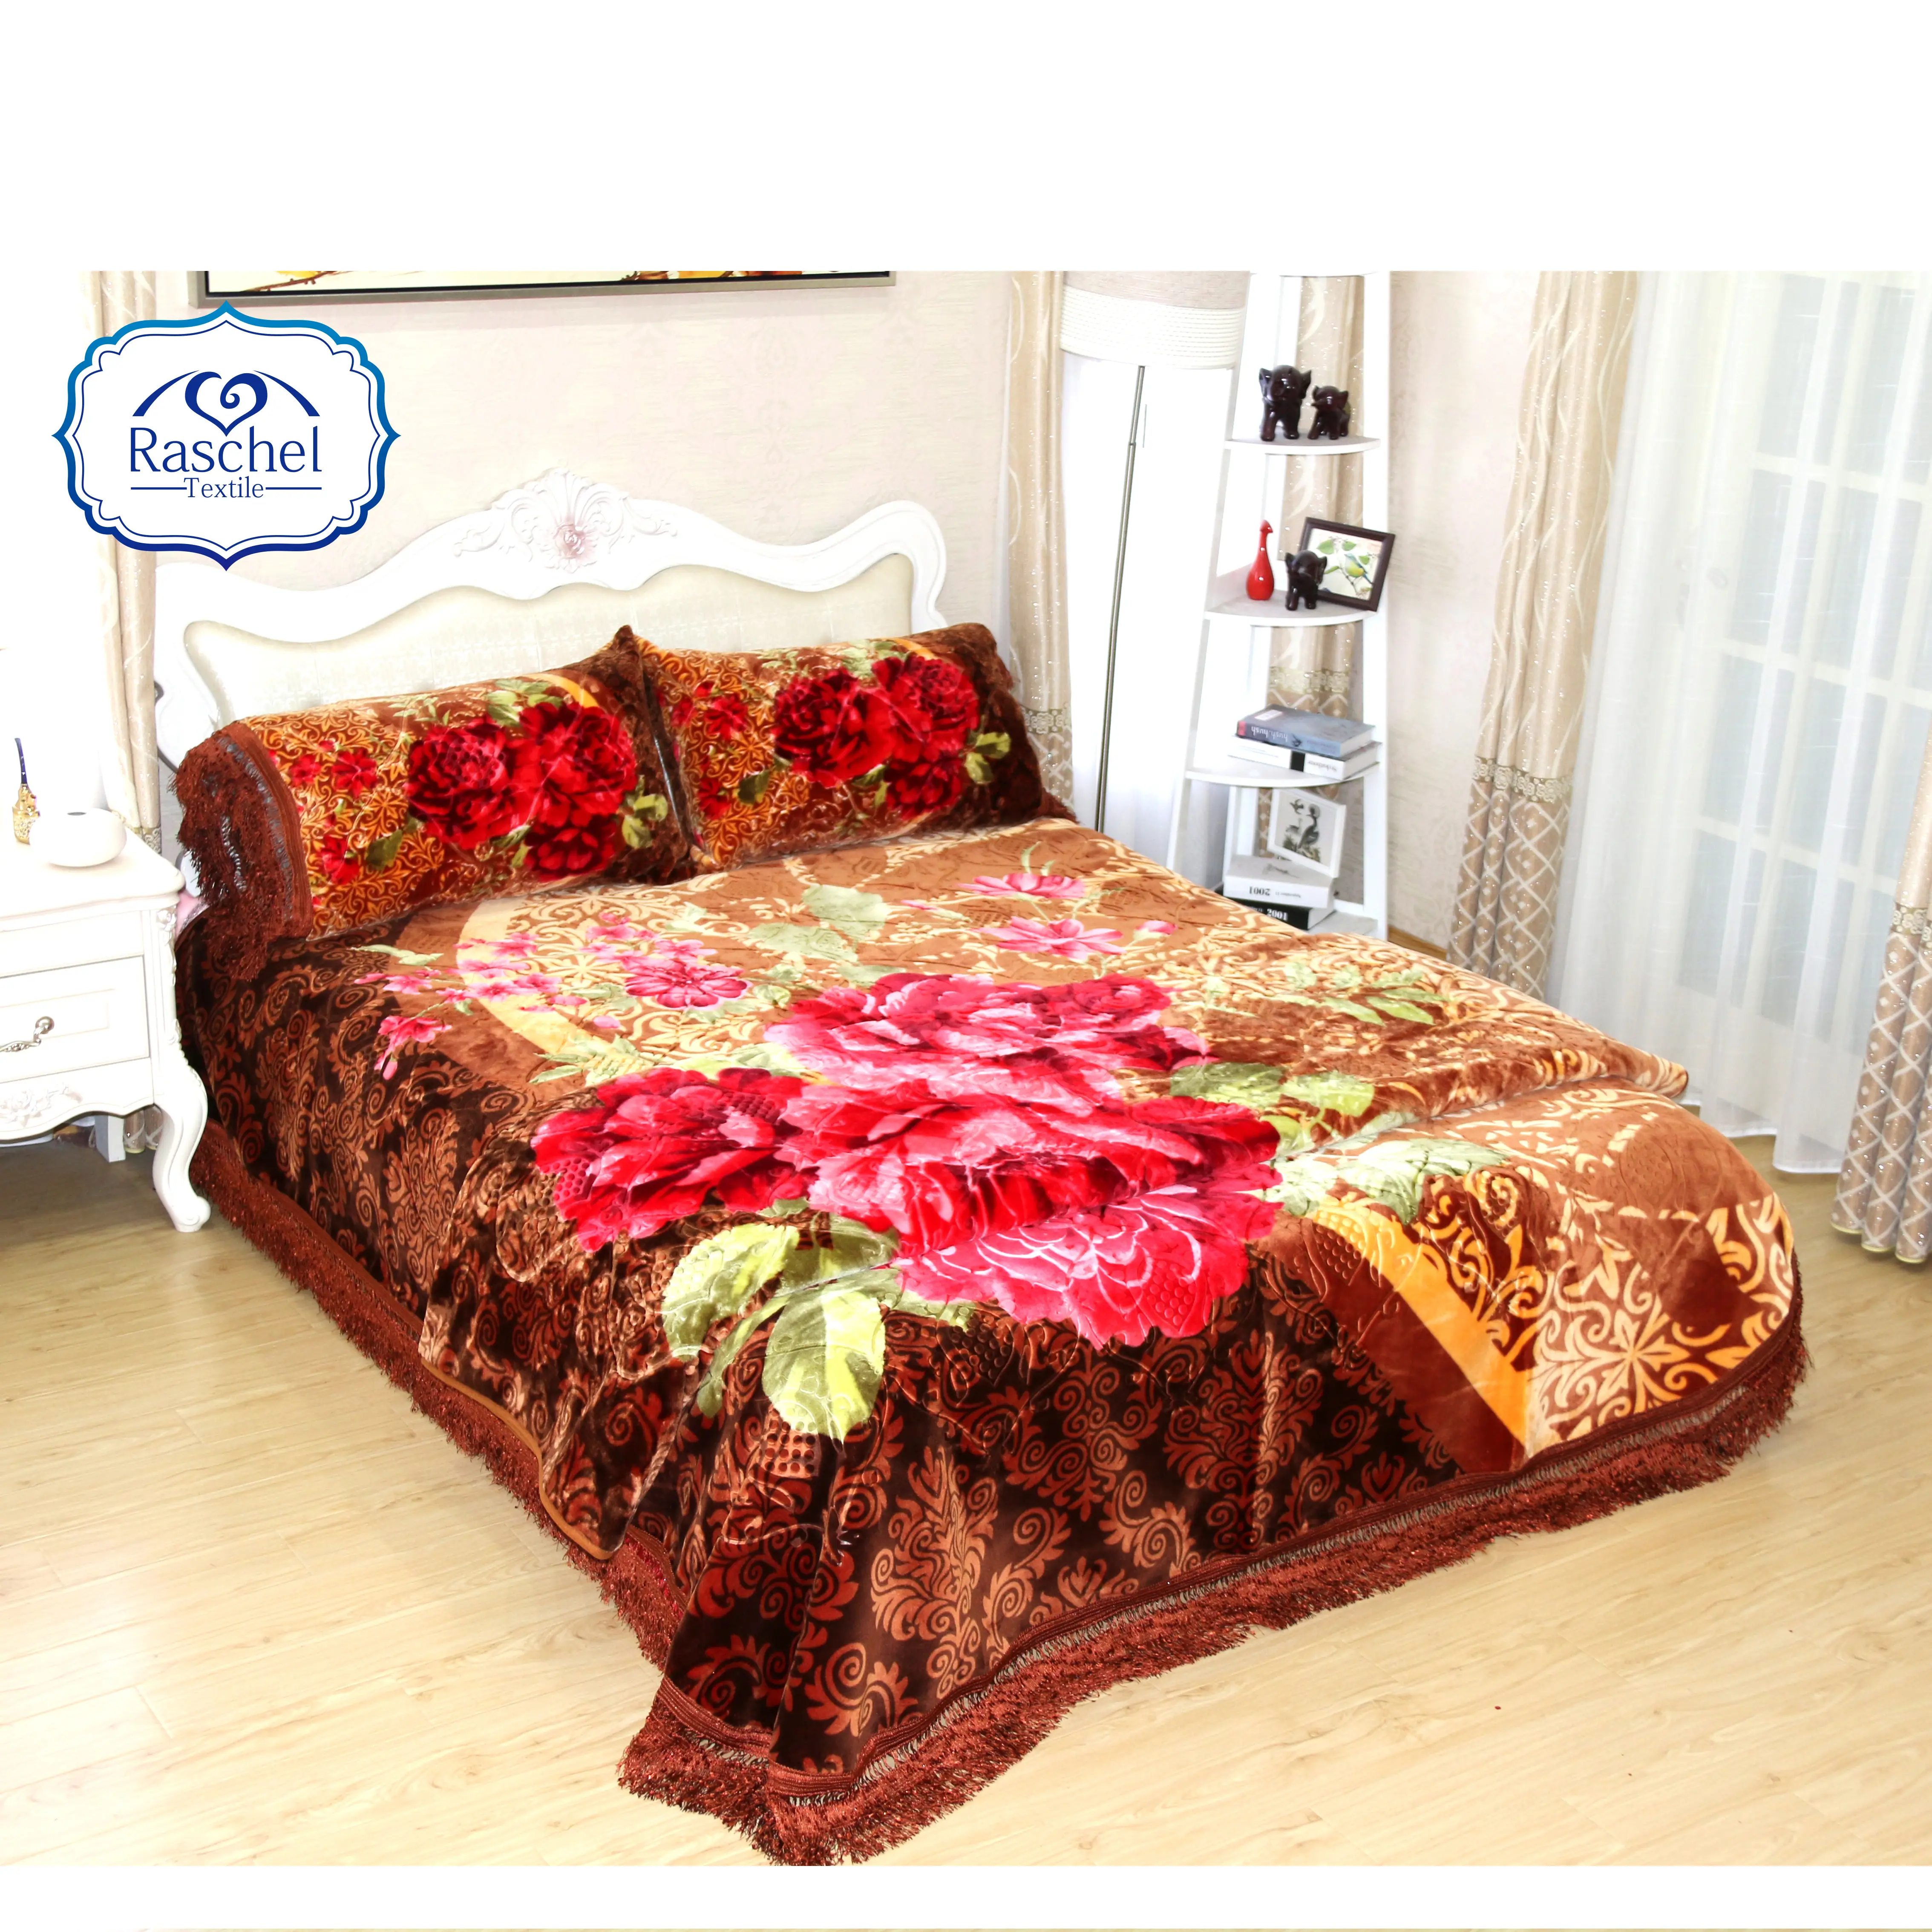 Instahot, nouveau modèle Parure de lit en nattes, couverture lourde, pour le marché de dubaï, ensemble de 4 pièces, 2021